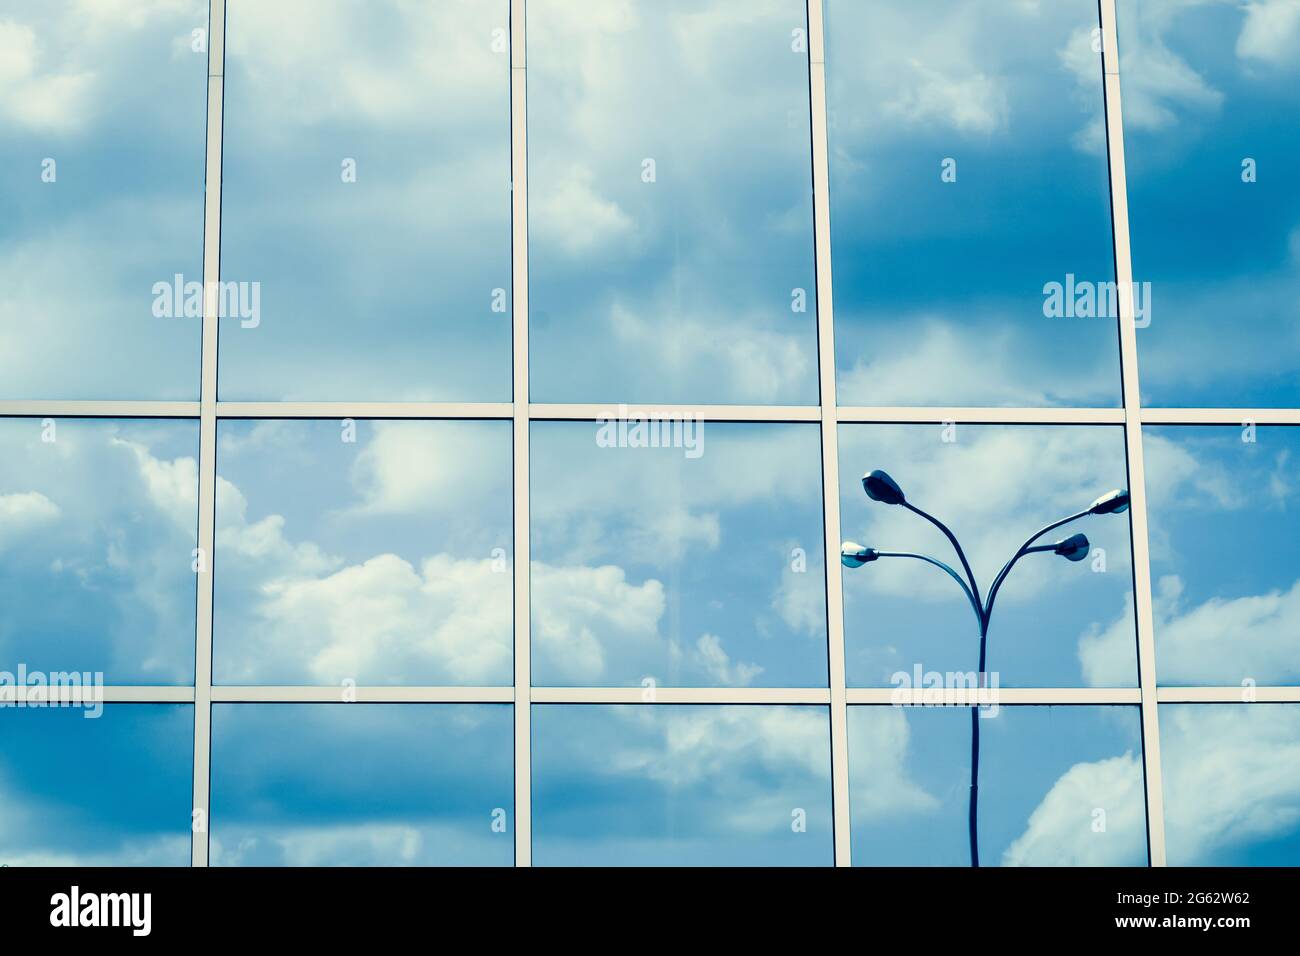 Verspiegelte Fenster, Spiegelung von Wolken und Laterne, blauer Himmel, Wolkenkratzer-Oberfläche. Linienmuster, Perspektive, Stahlstruktur, urbane Abstraktion. Geome Stockfoto